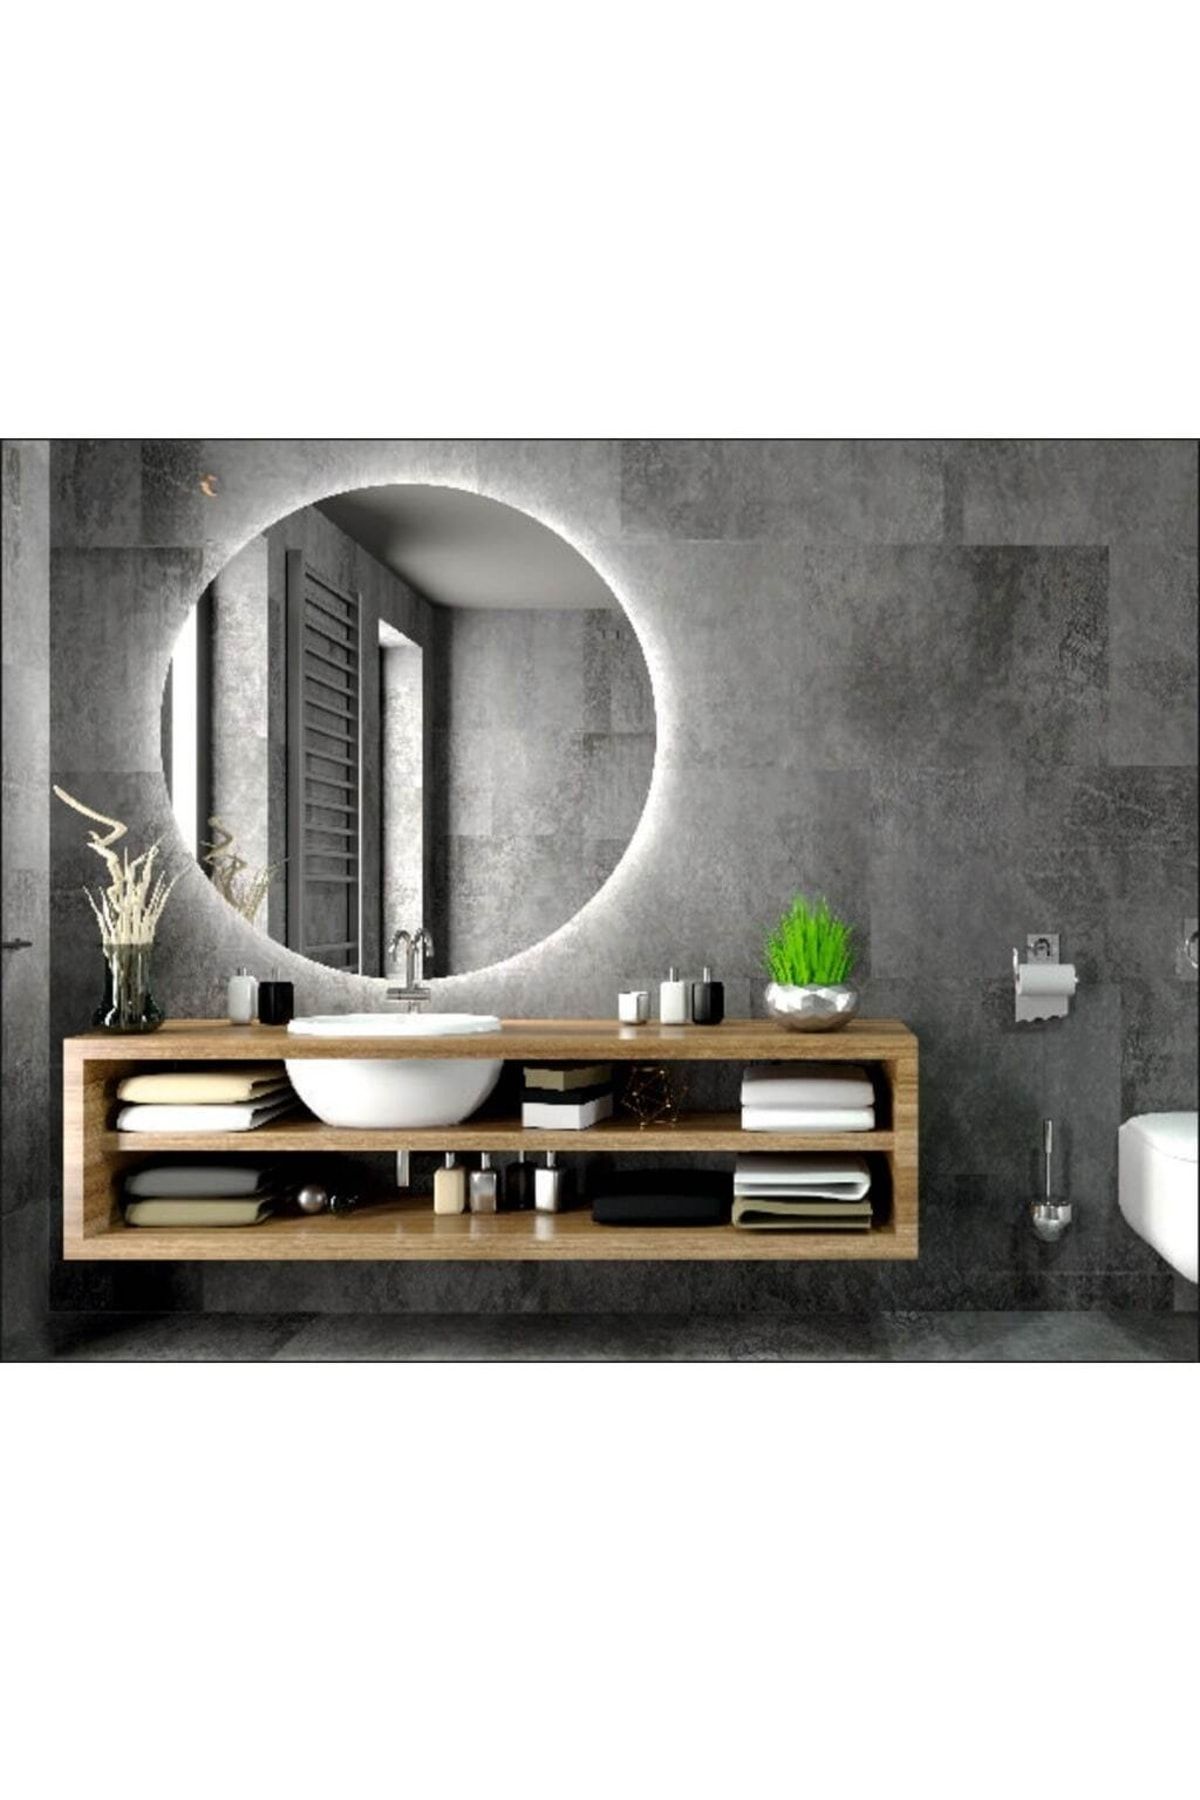 Toprak dekor 70 Cm Çapında Beyaz Ledli Banyo Aynası-konsol Makyaj Aynası